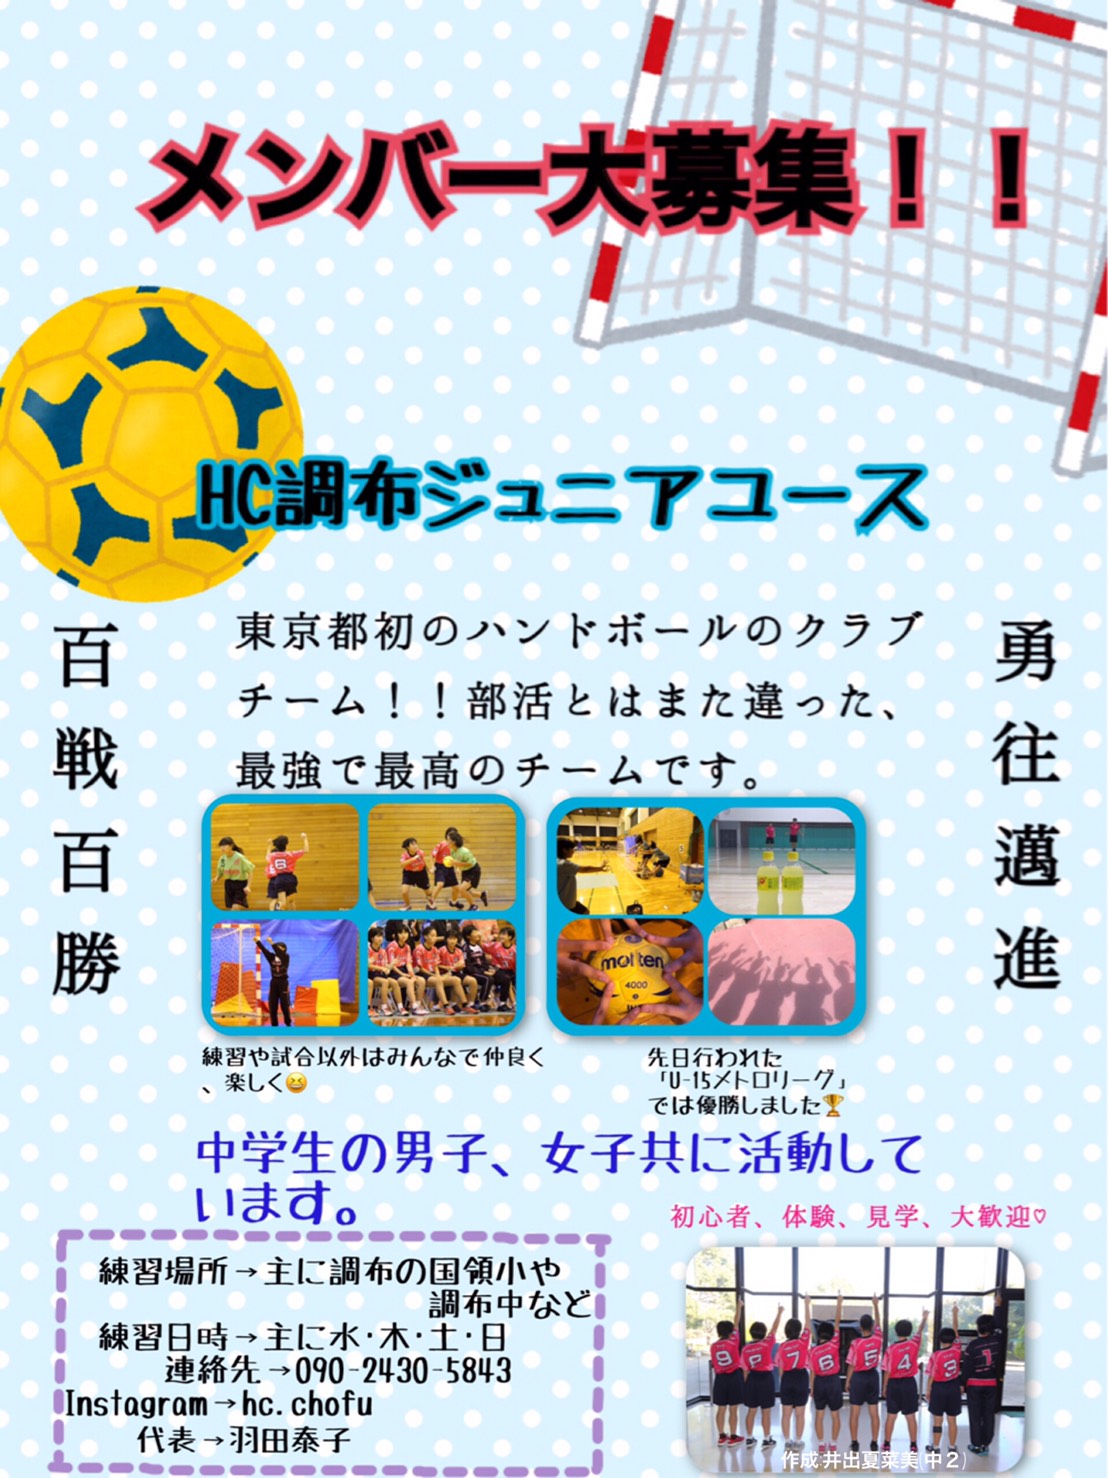 東京都ハンドボール協会のホームページ